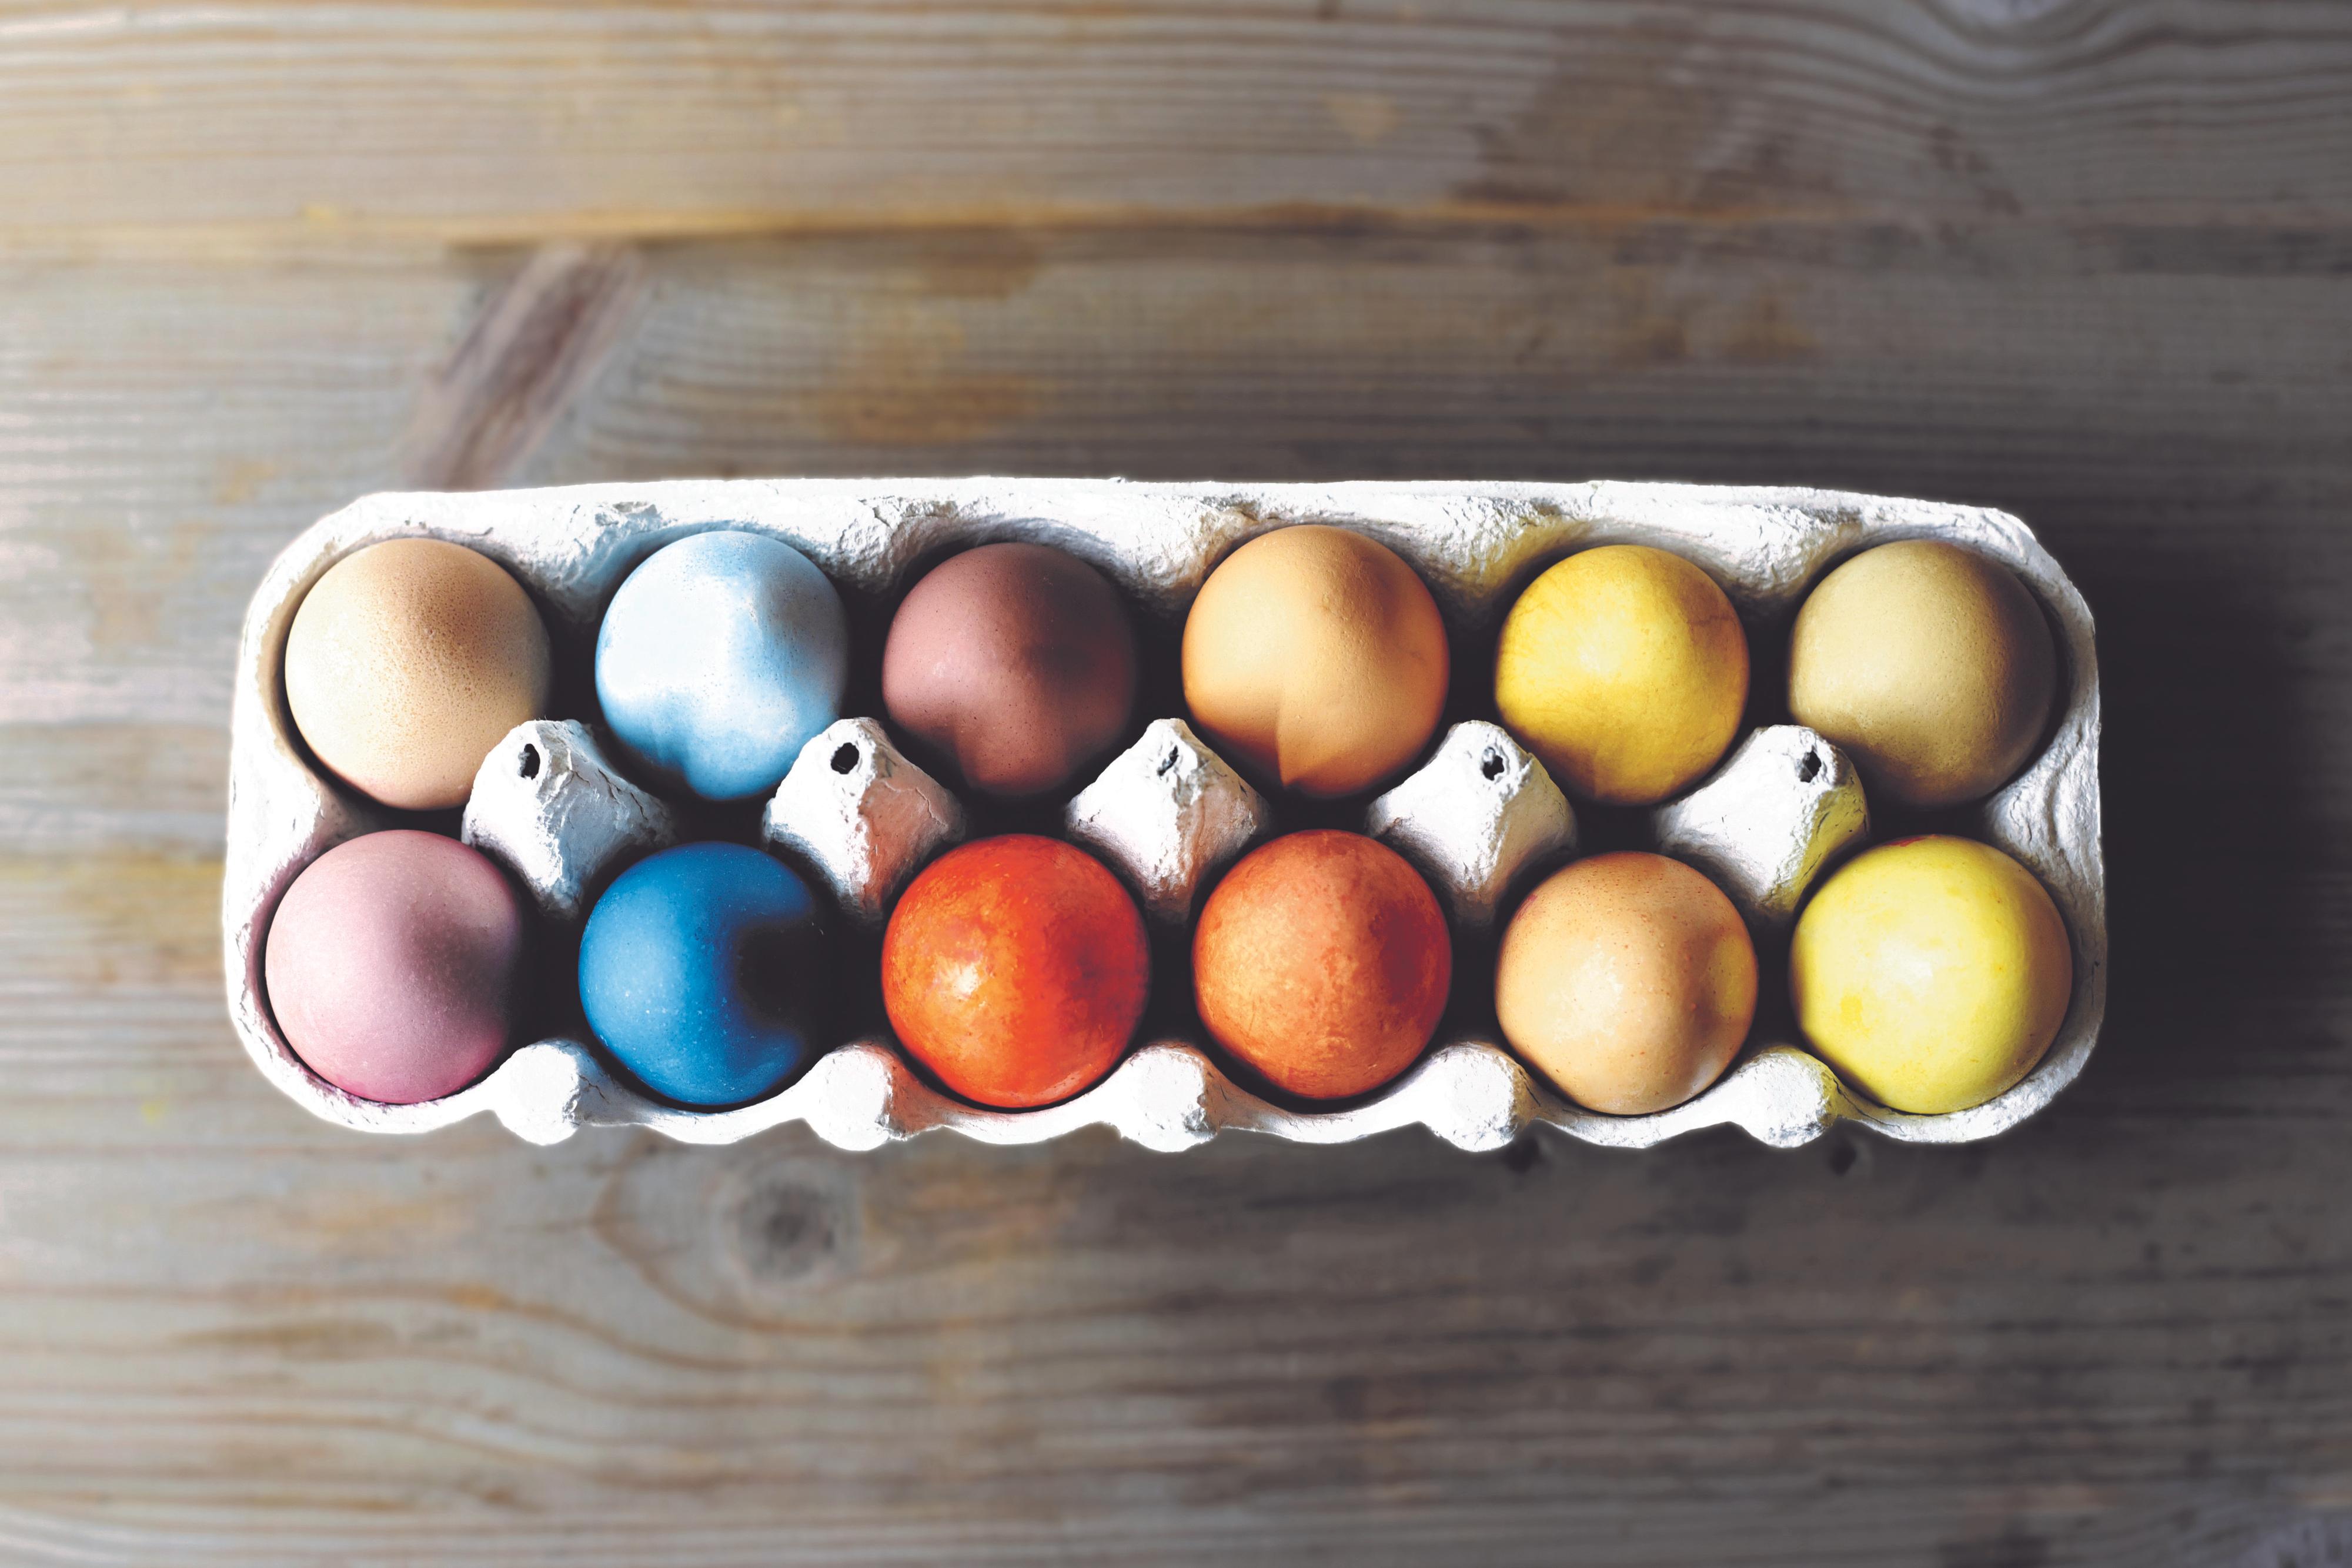 NATURENS FARGER: Snakk om å sette farge på påskefrokosten. Disse har Mia Skrataas farget med mat og krydder, oppskrift i artikkelen.